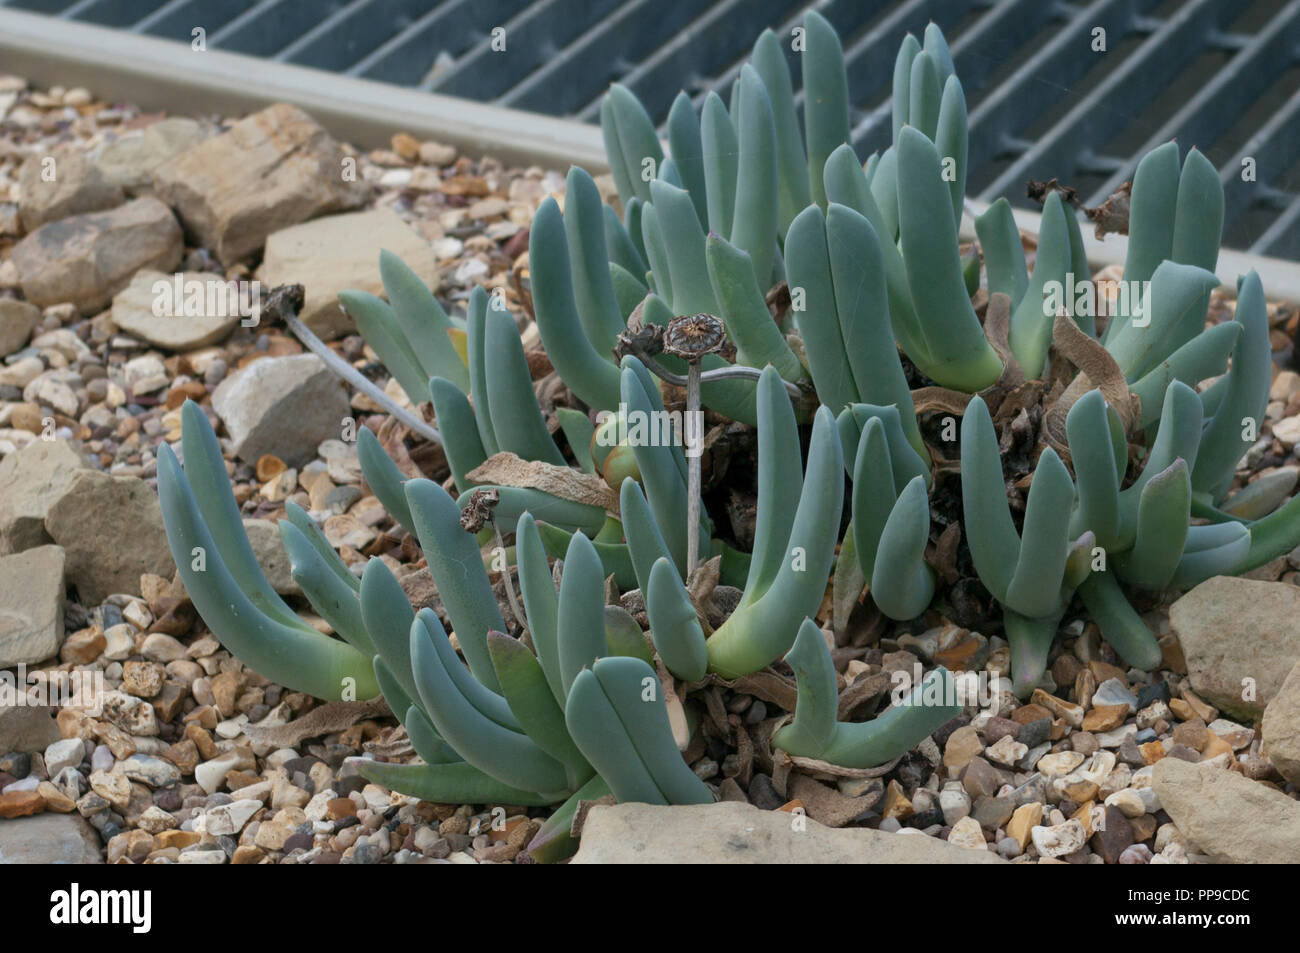 Aizoaceae saftige dikotylen Pflanze Sie üblicherweise als Eis pflanzen Teppich Unkraut oder vygies bekannt Stockfoto